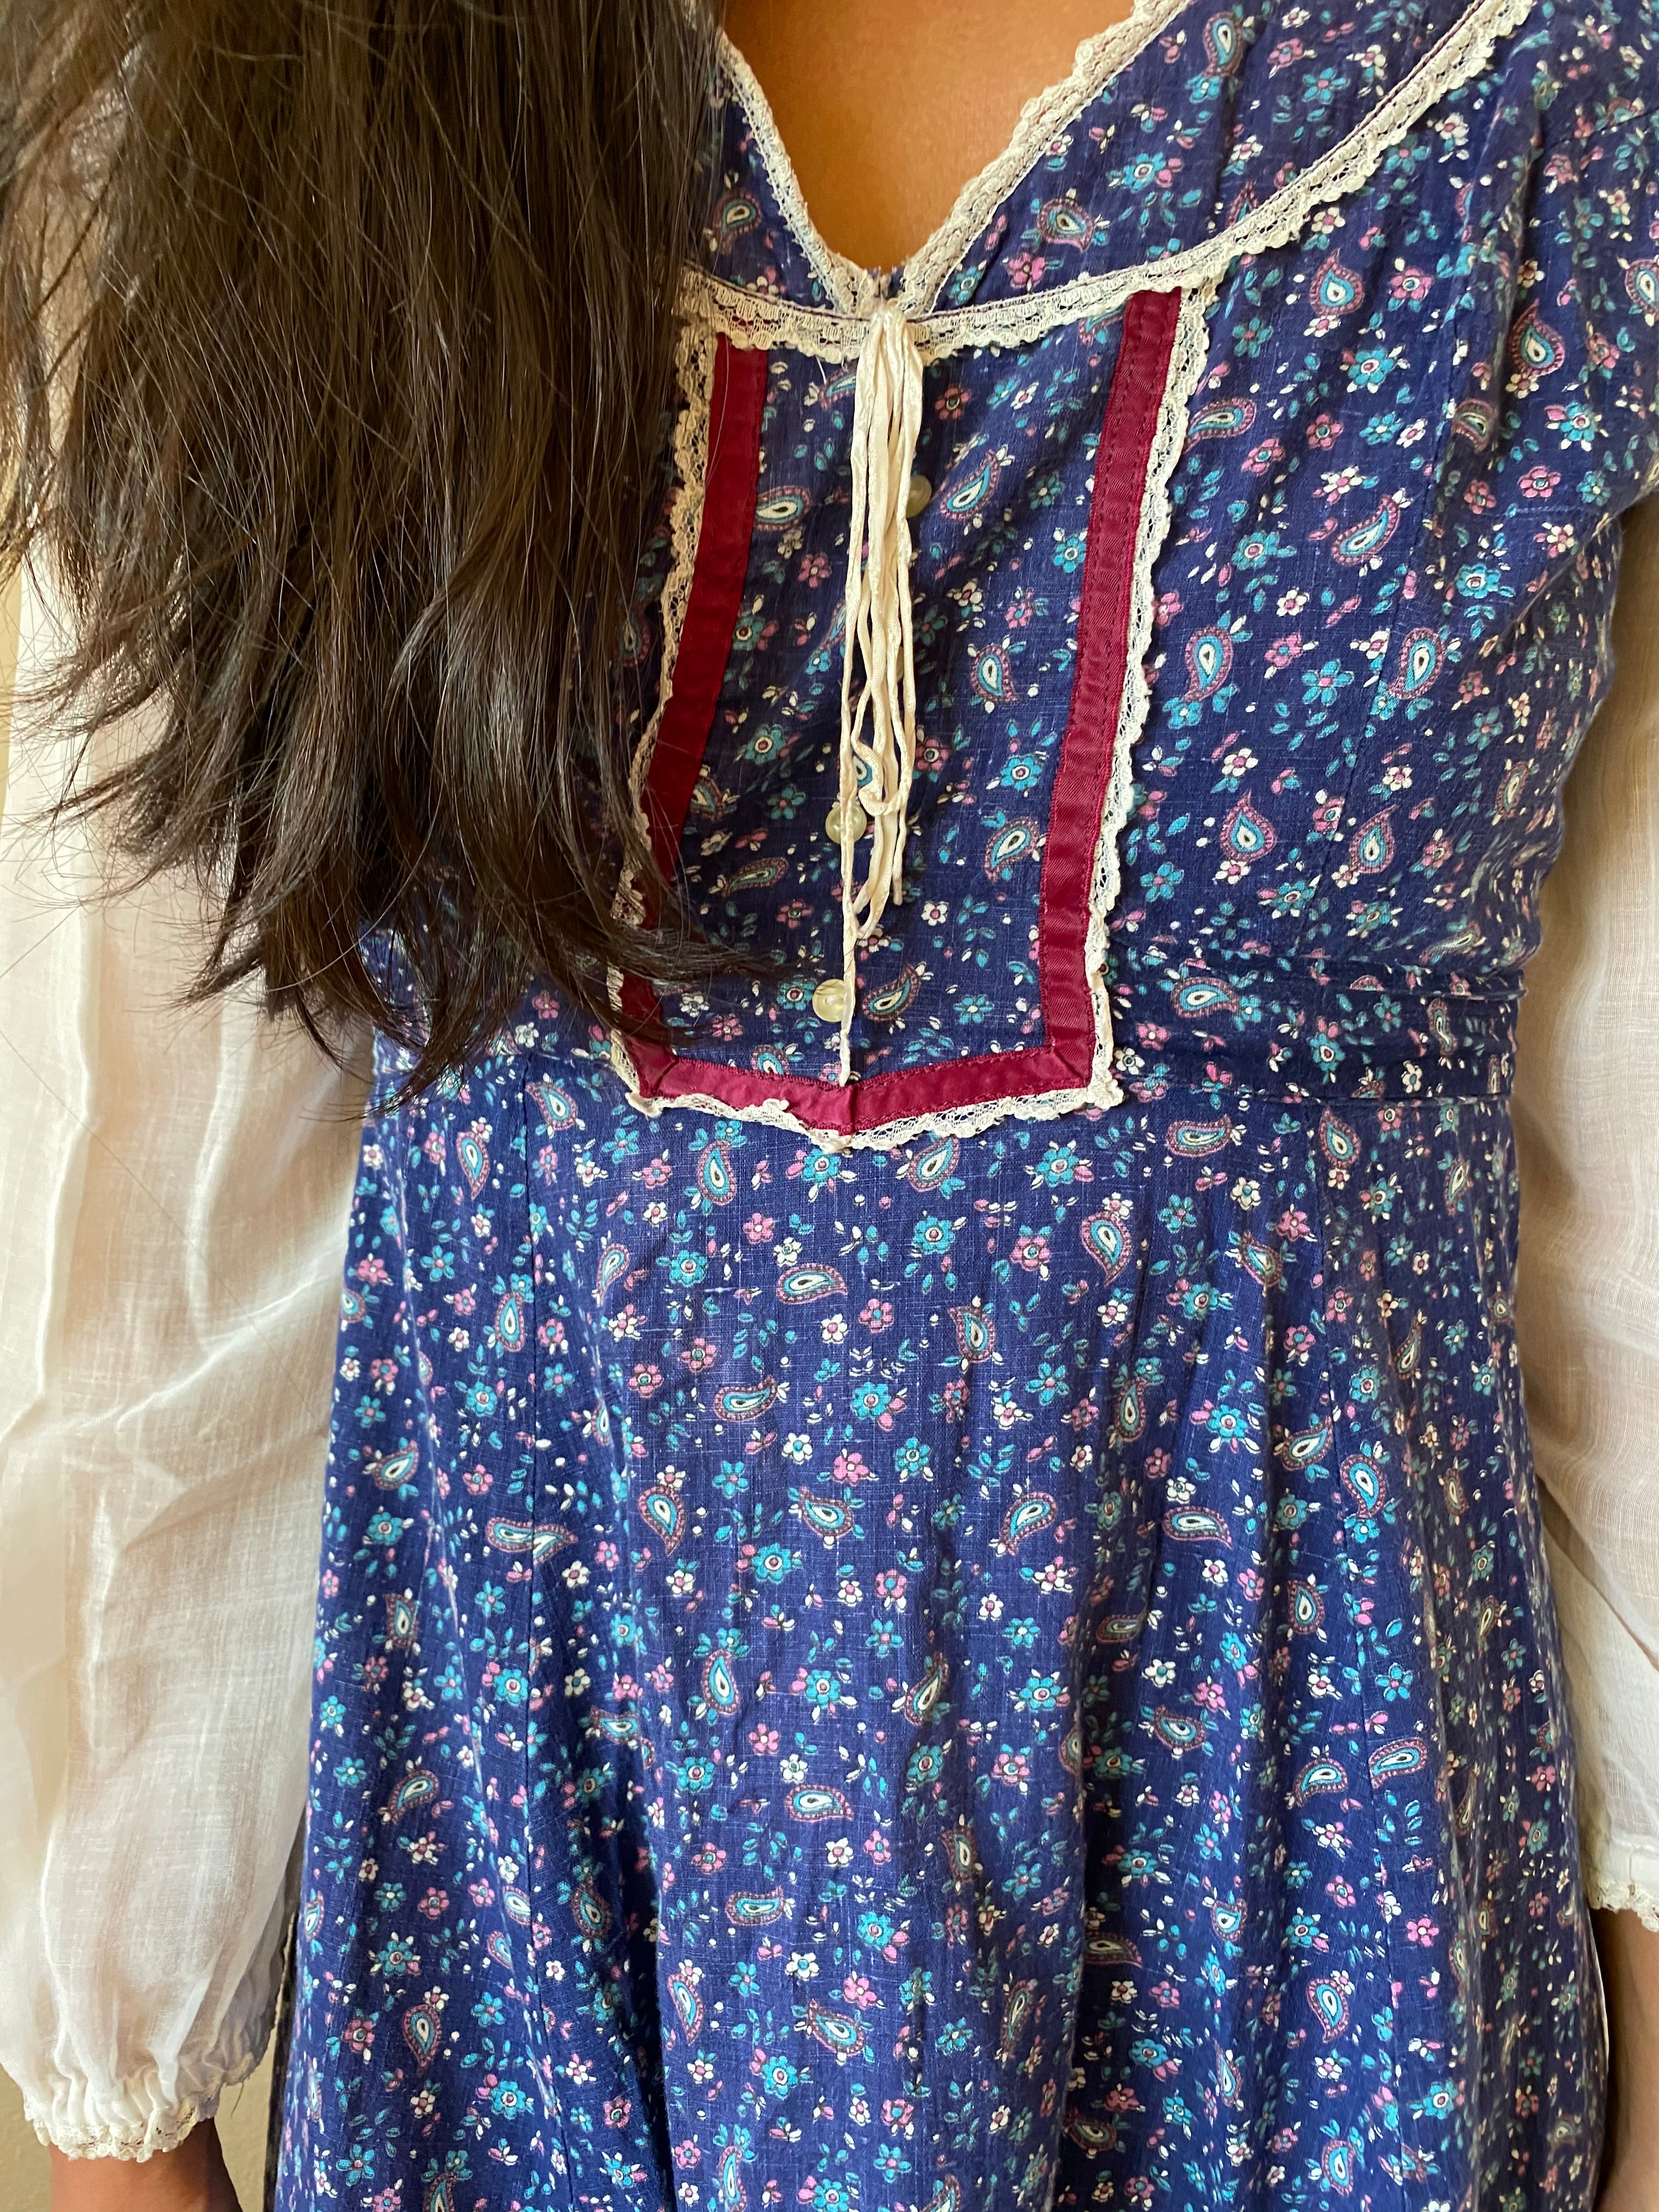 70s gunne inspired calico dress